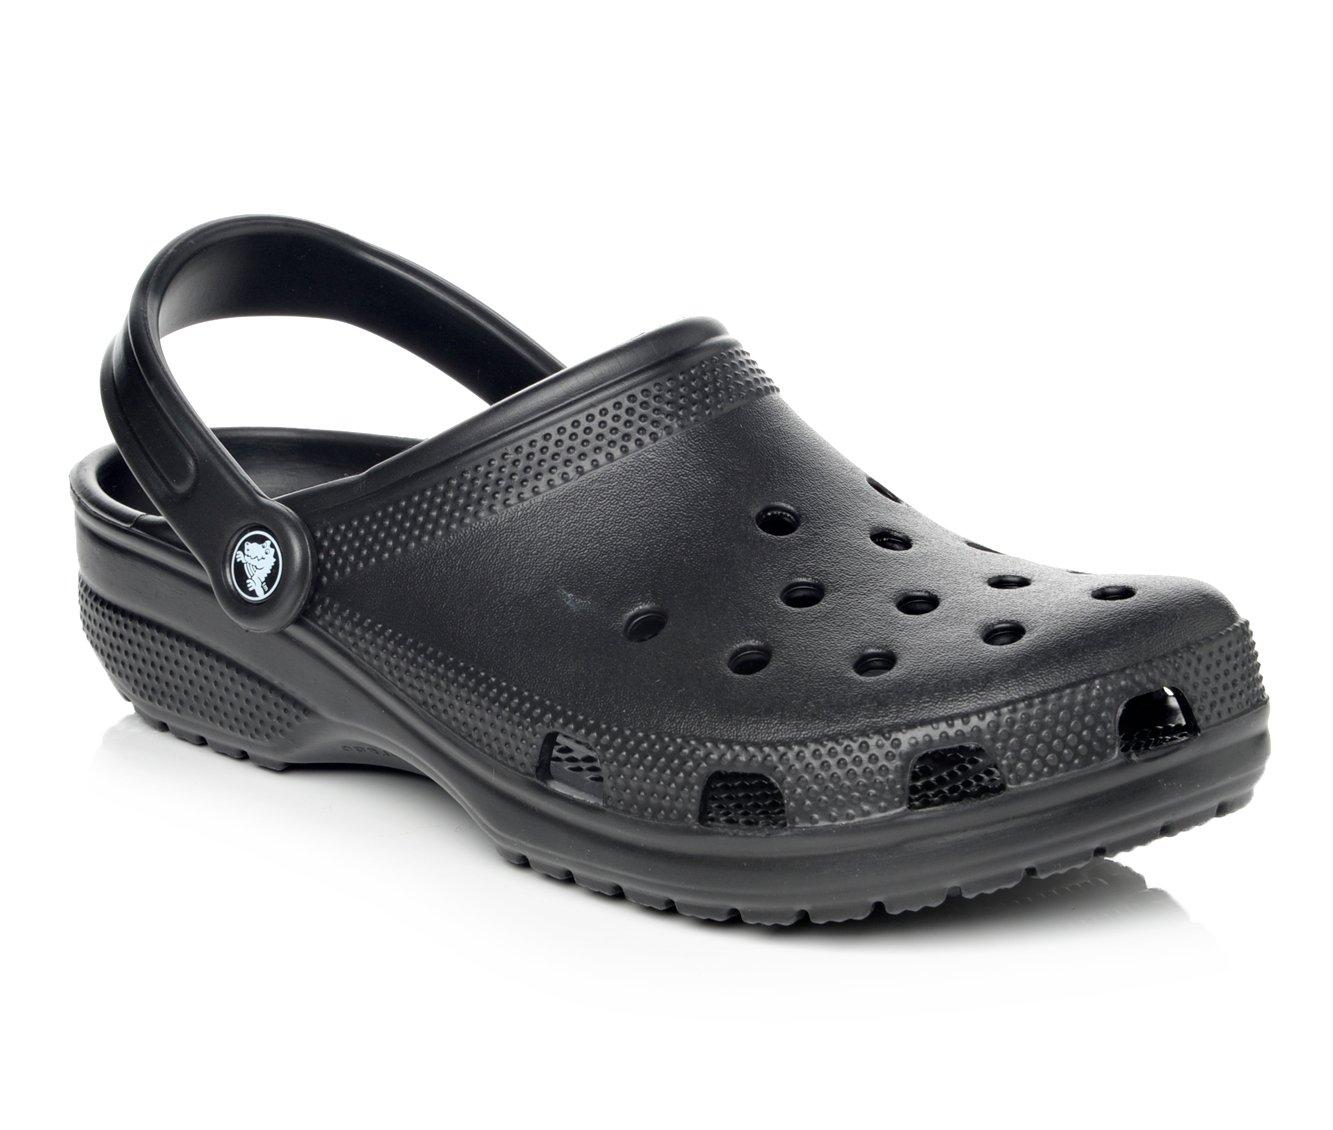 Adults' Crocs Clogs Shoe